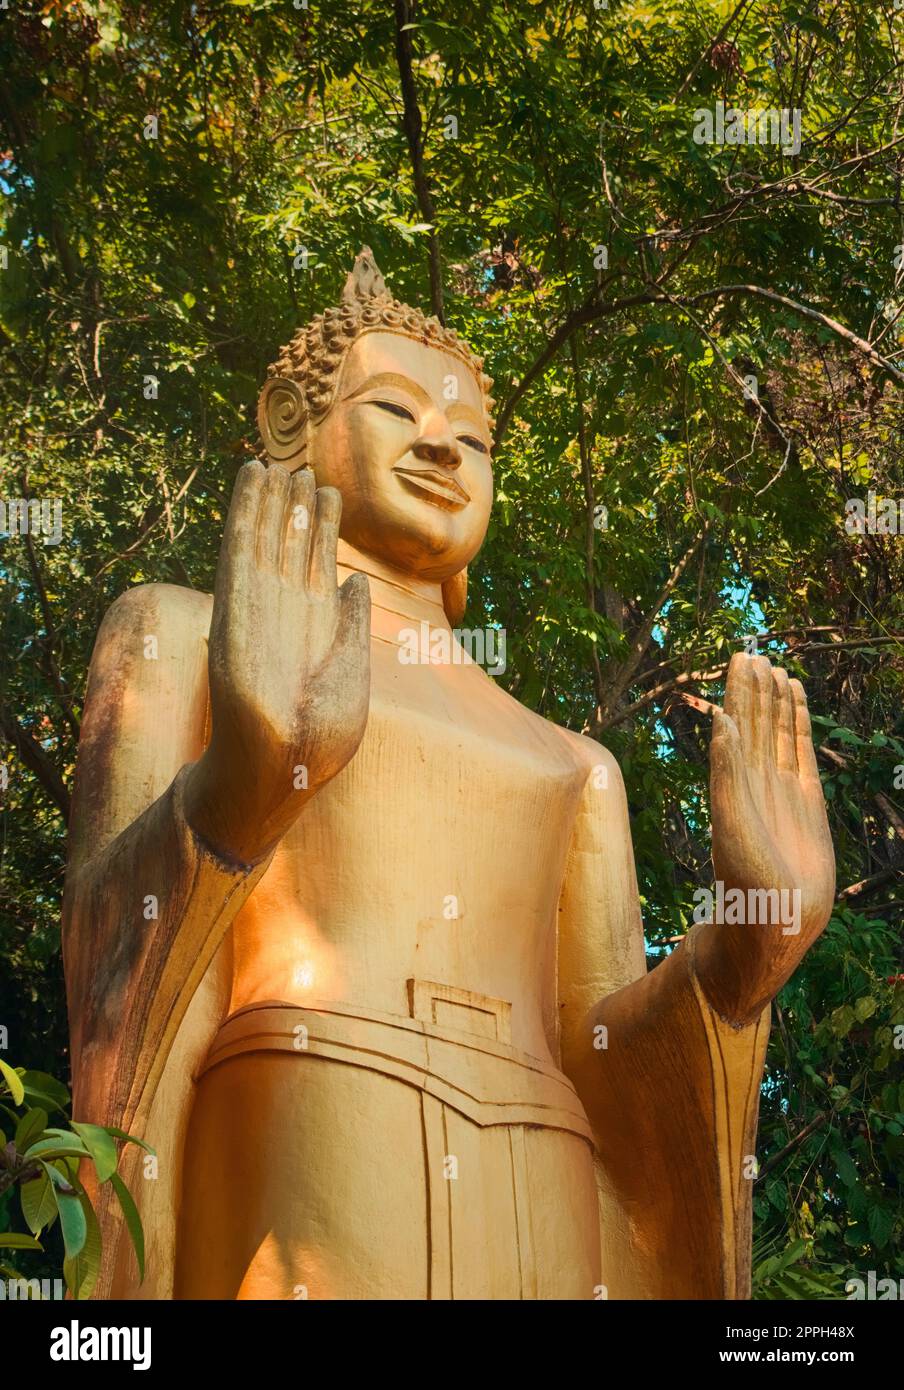 Statua dorata di Buddha in piedi nella giungla, sulla strada per la cima del Monte Phou si, una montagna sacra a Luang Prabang, Laos. Foto Stock